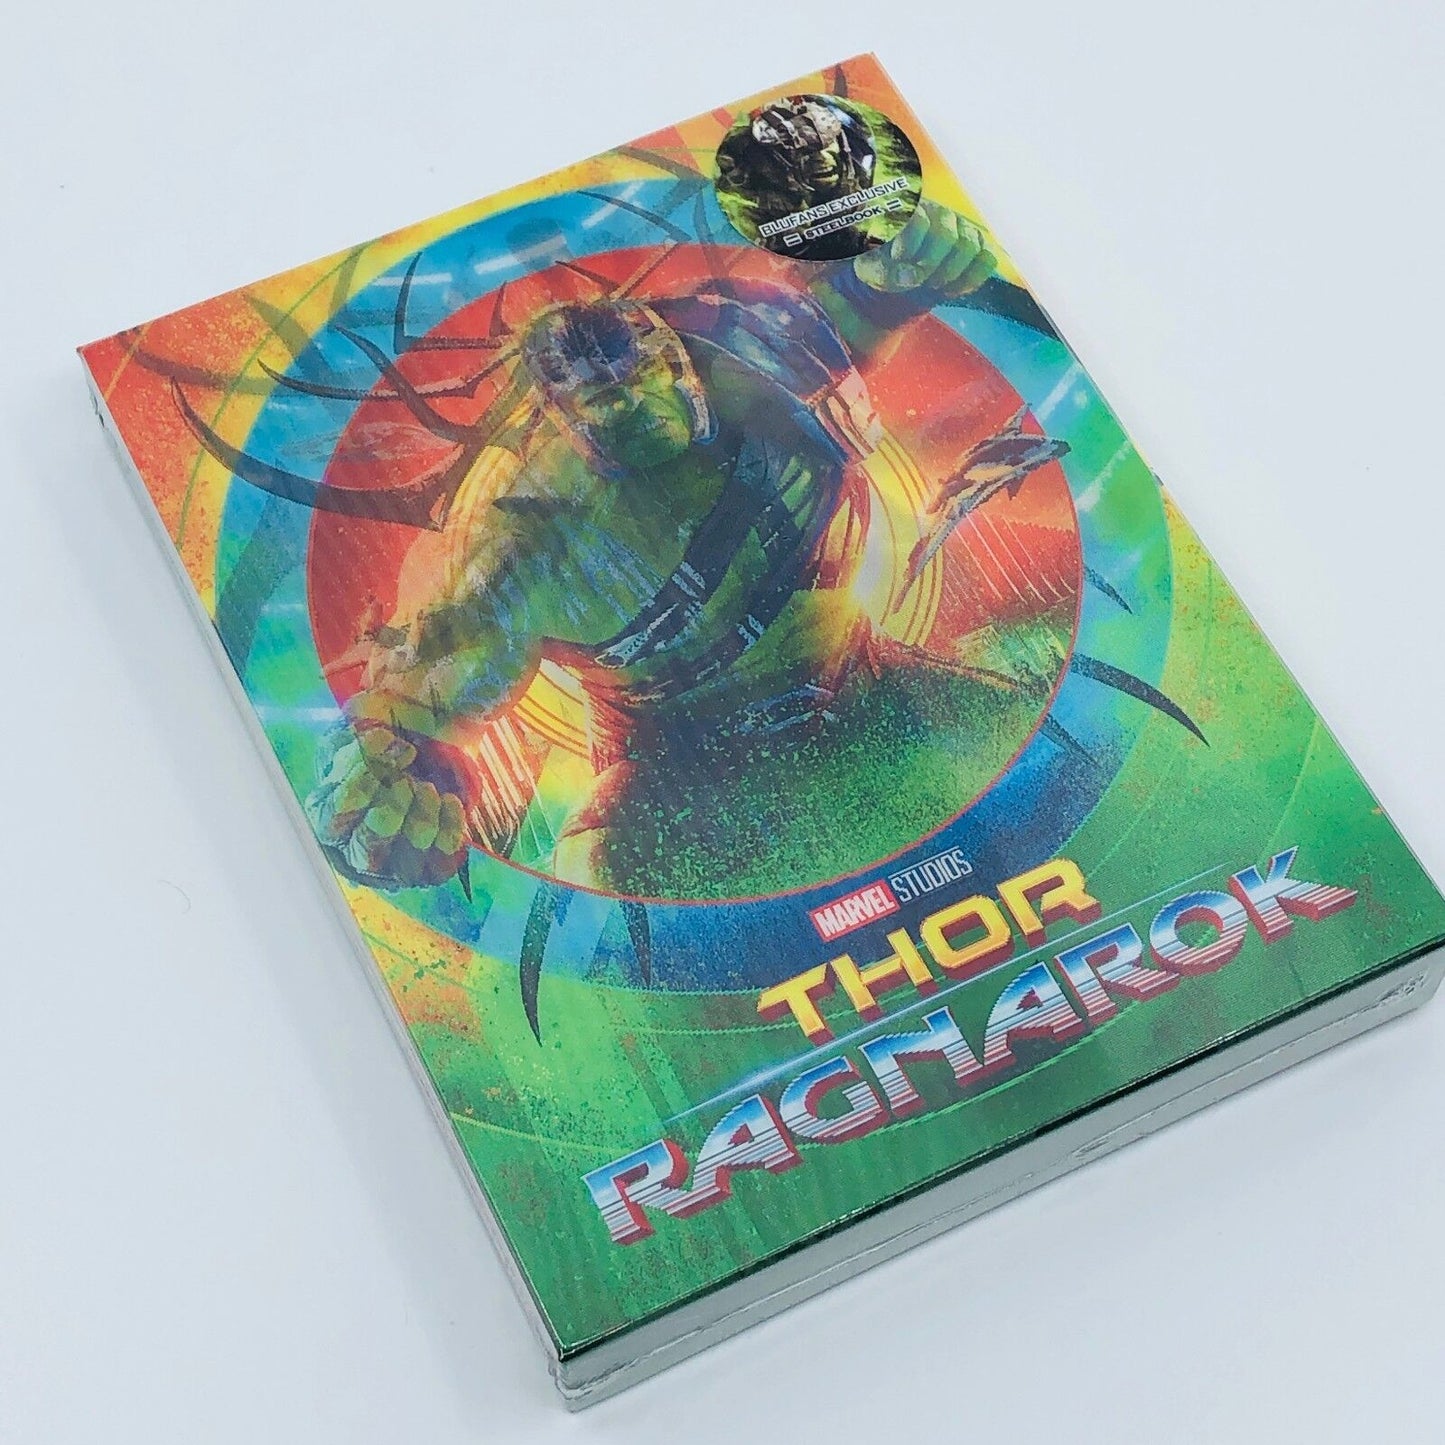 Thor: Ragnarok 3D+2D Blu-ray Steelbook Blufans Exclusive #44 Lenticuar Slip